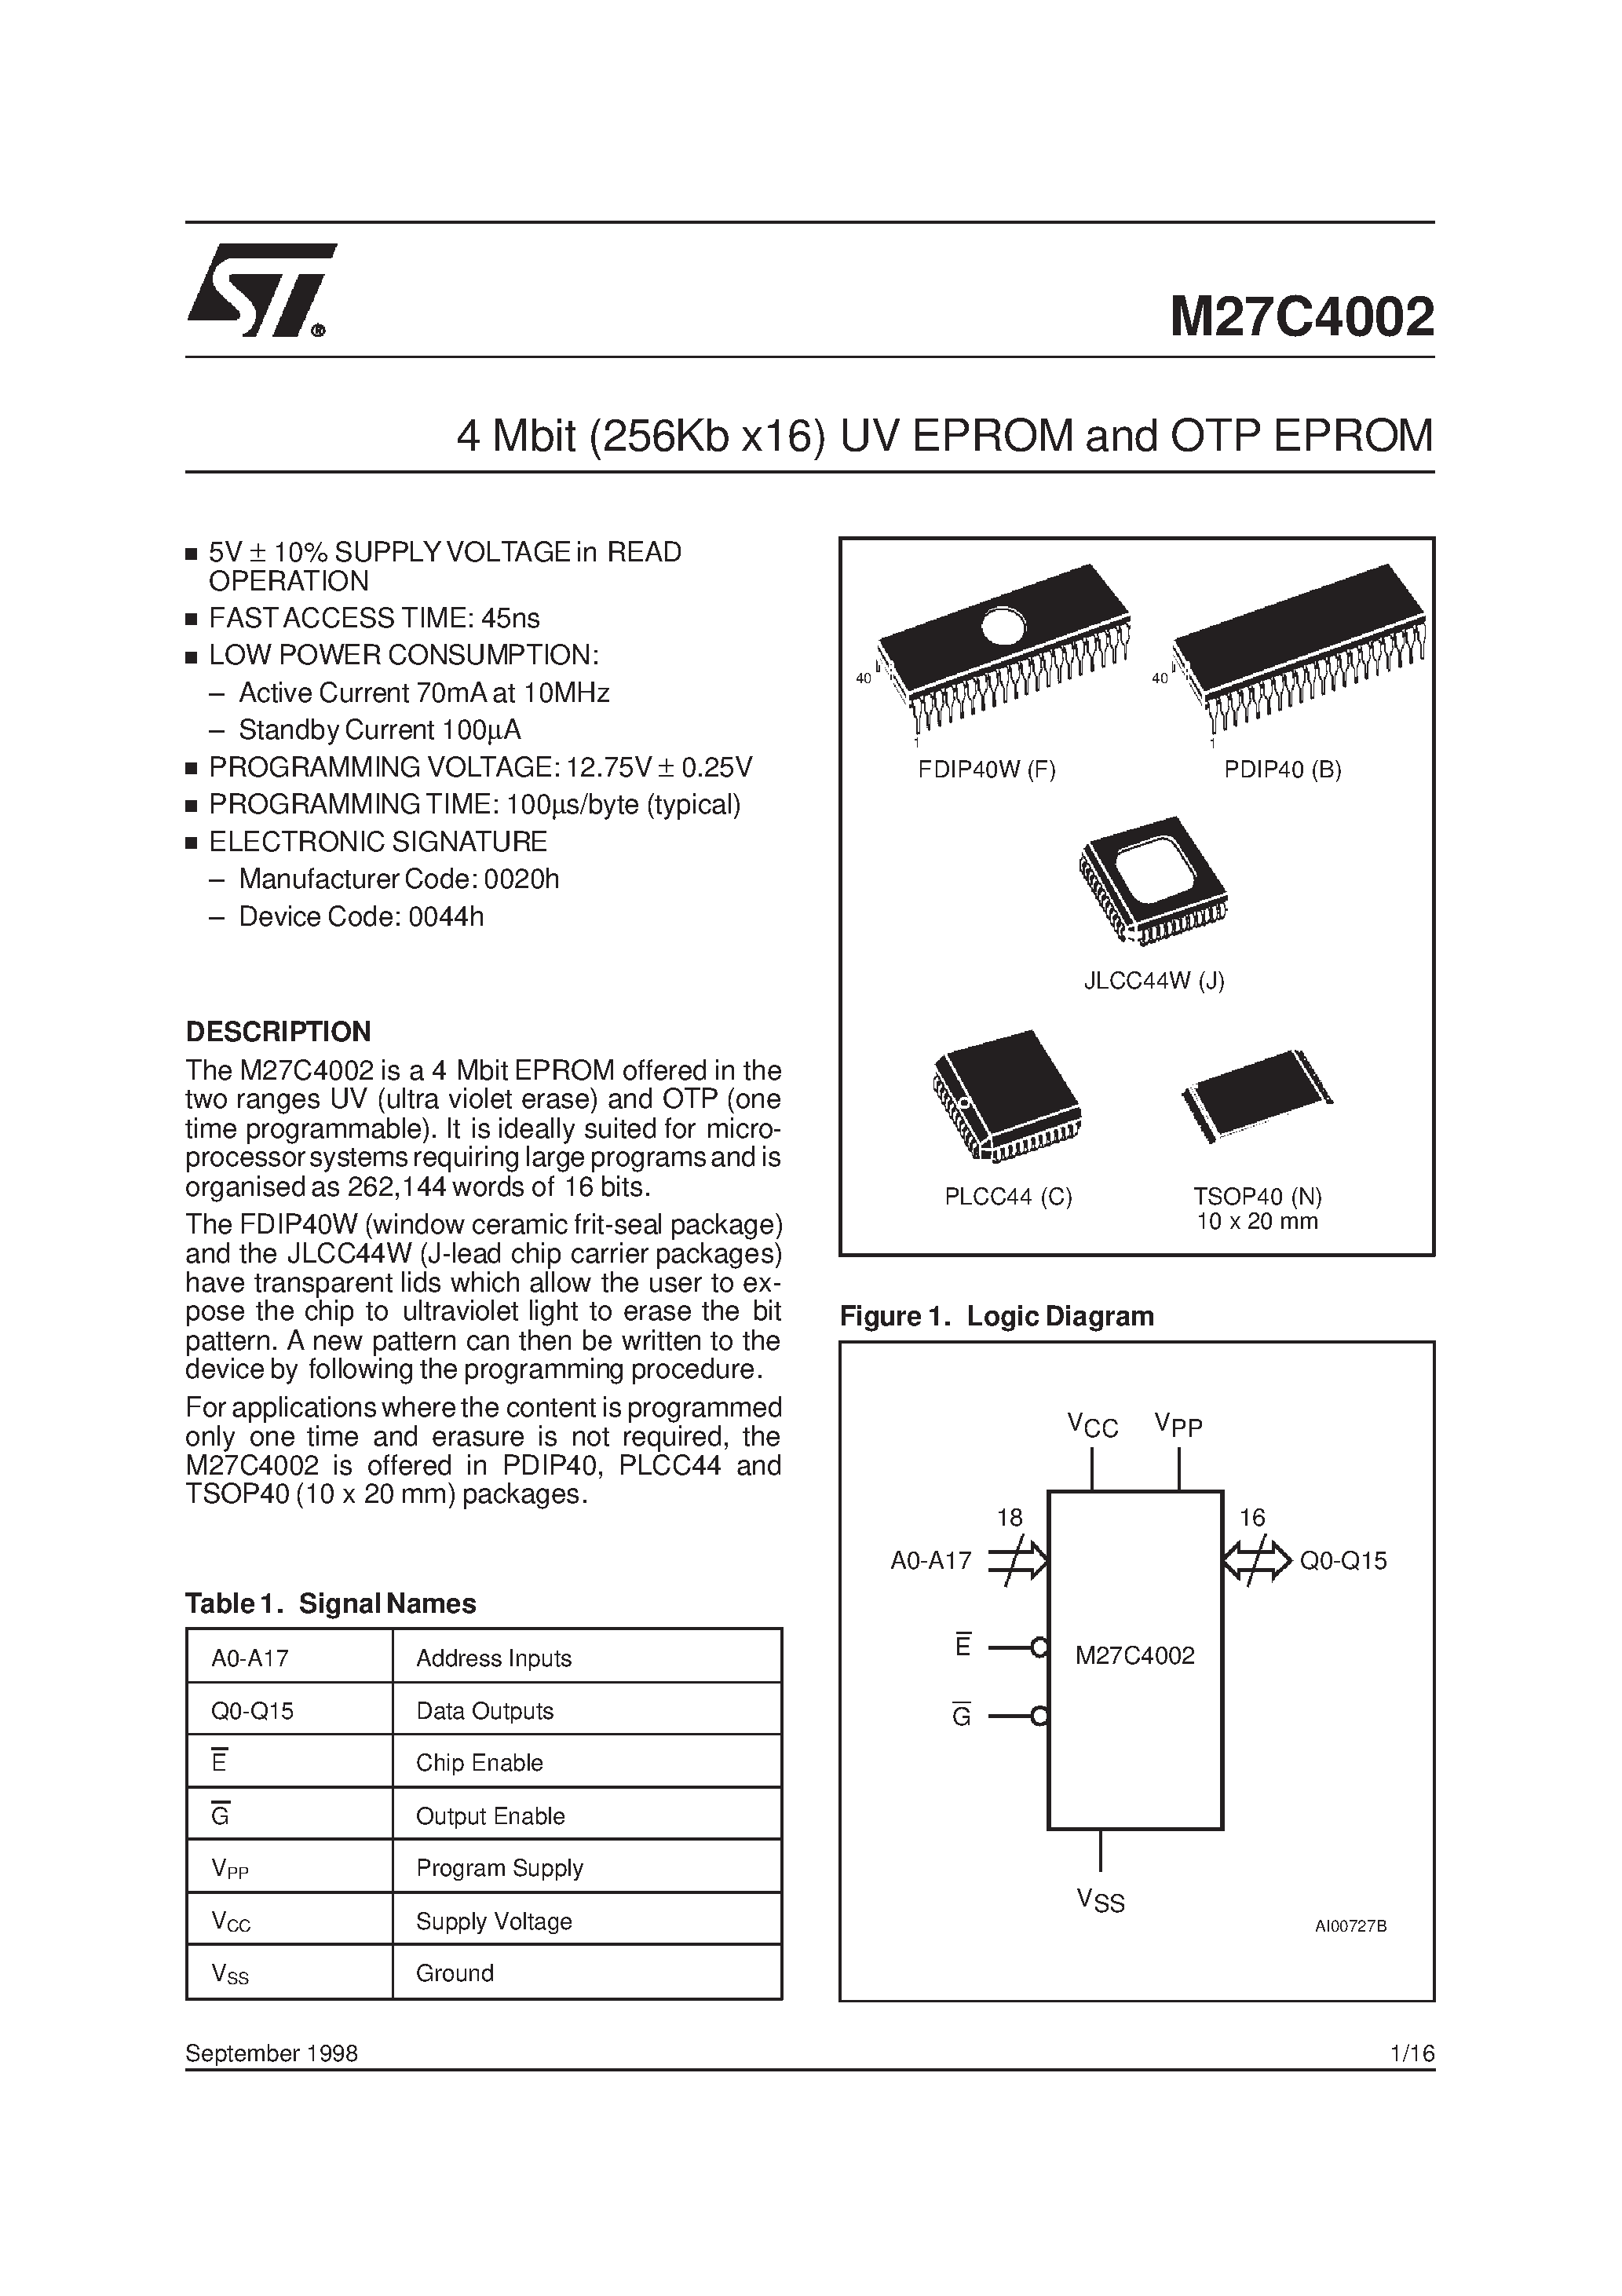 Datasheet M27C4002-10F - 4 Mbit 256Kb x16 UV EPROM and OTP EPROM page 1